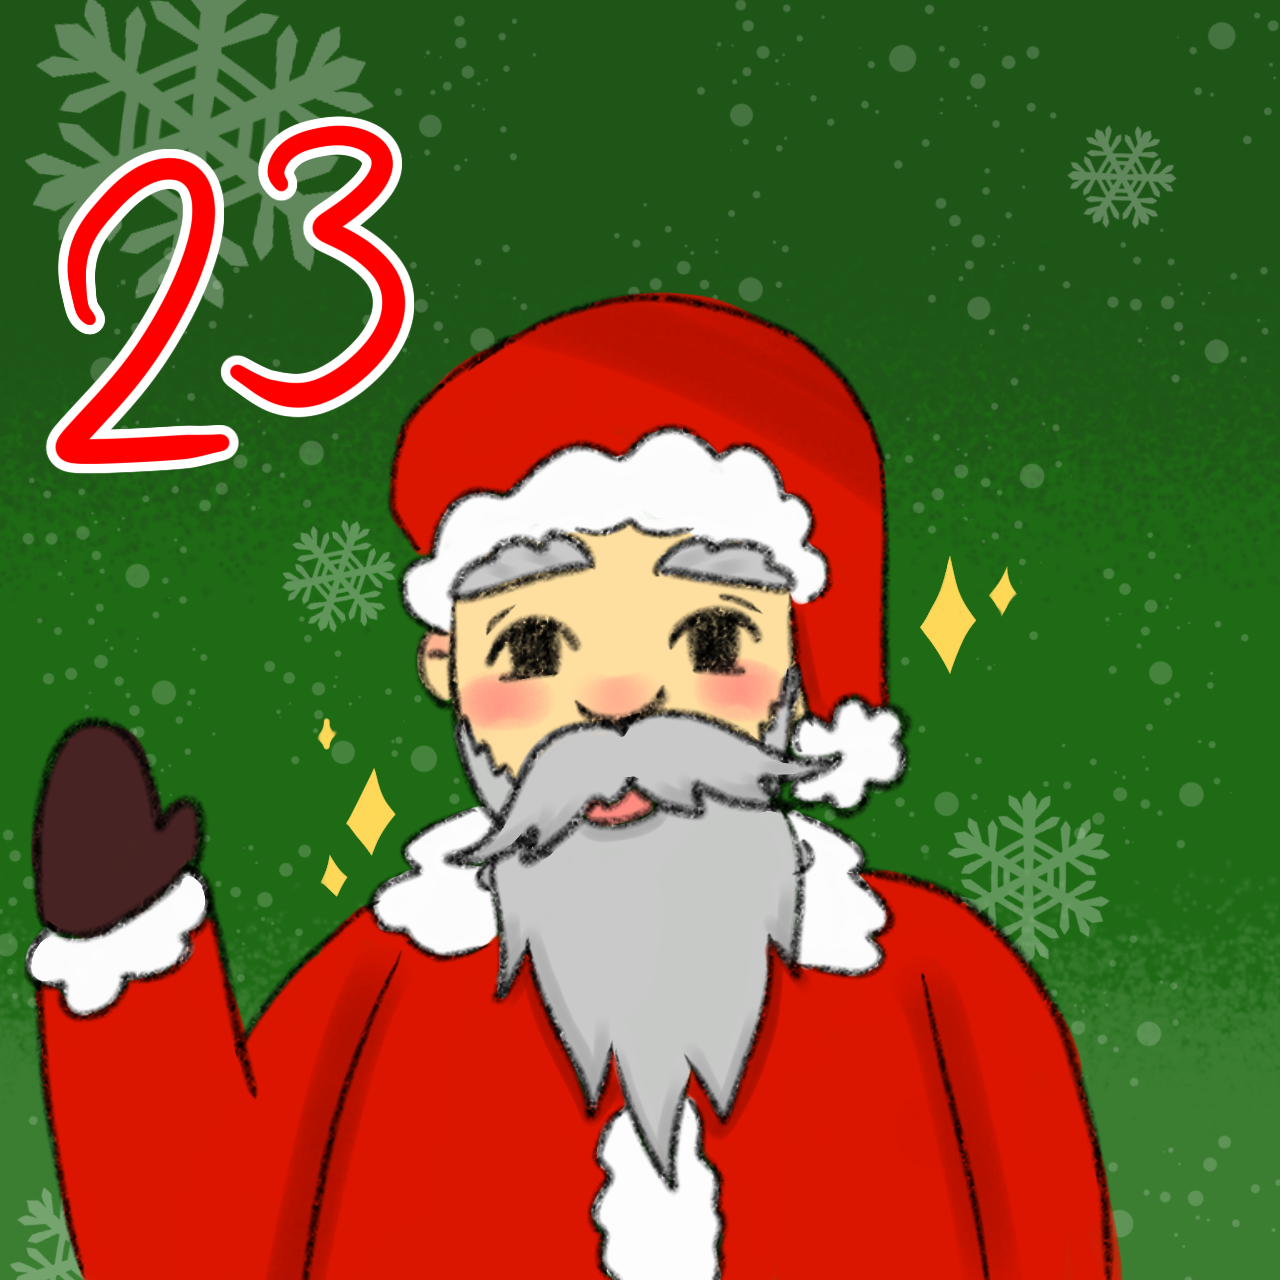 Ein gemalter Weihnachtsmann. Er winkt. Daneben die Nummer 23.